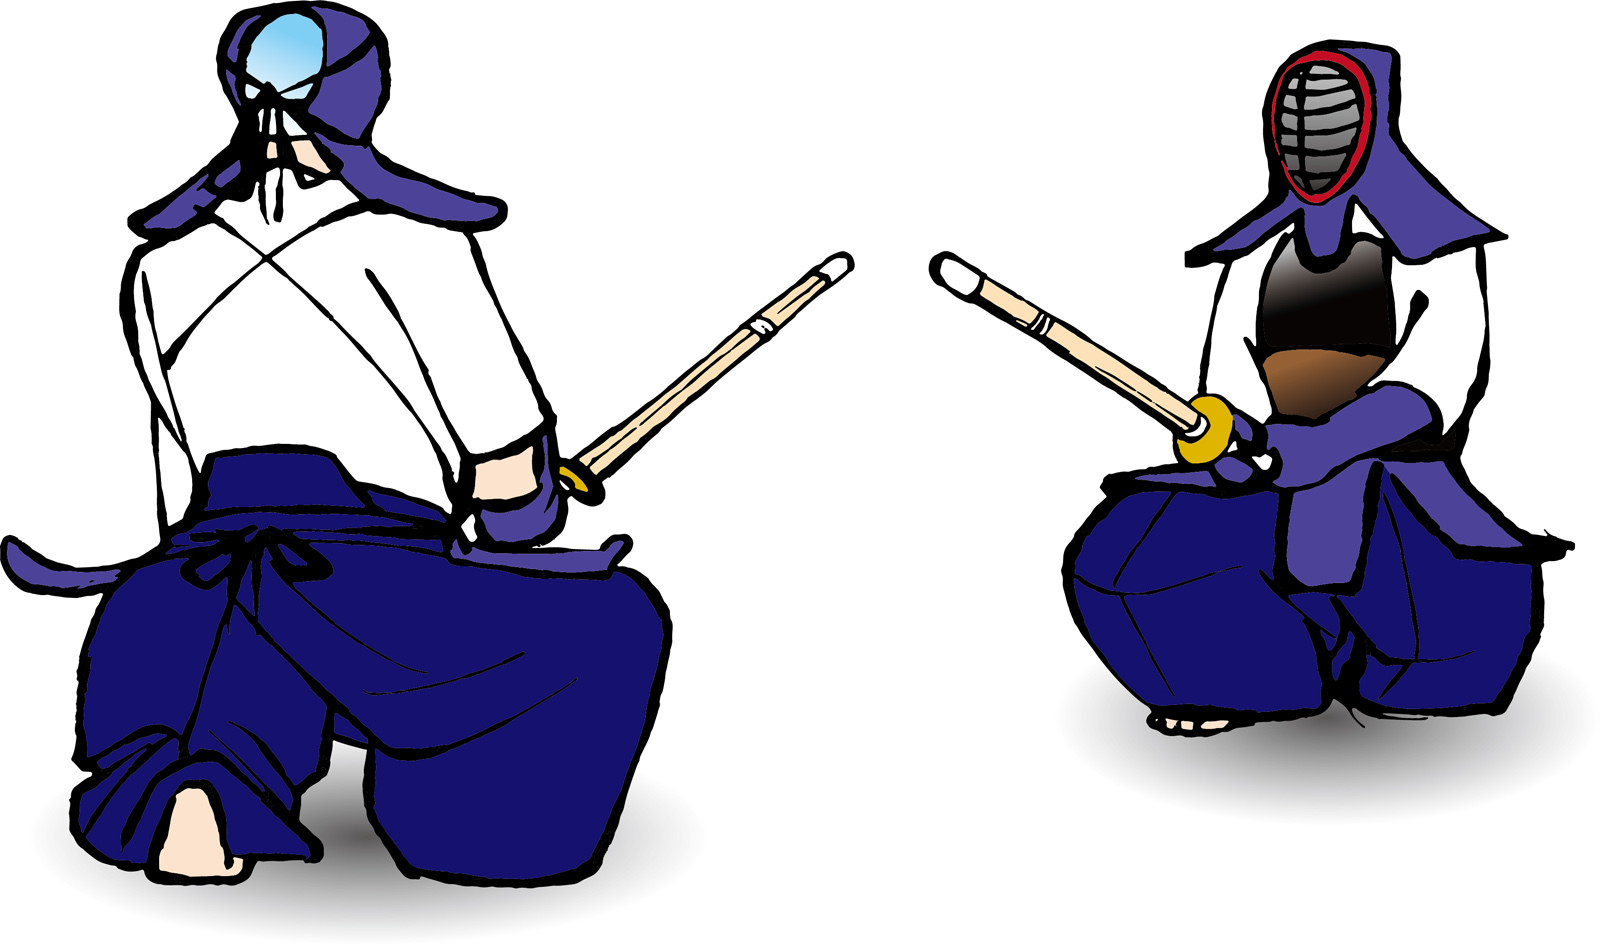 剣道の試合で逆胴を打つ方法とは